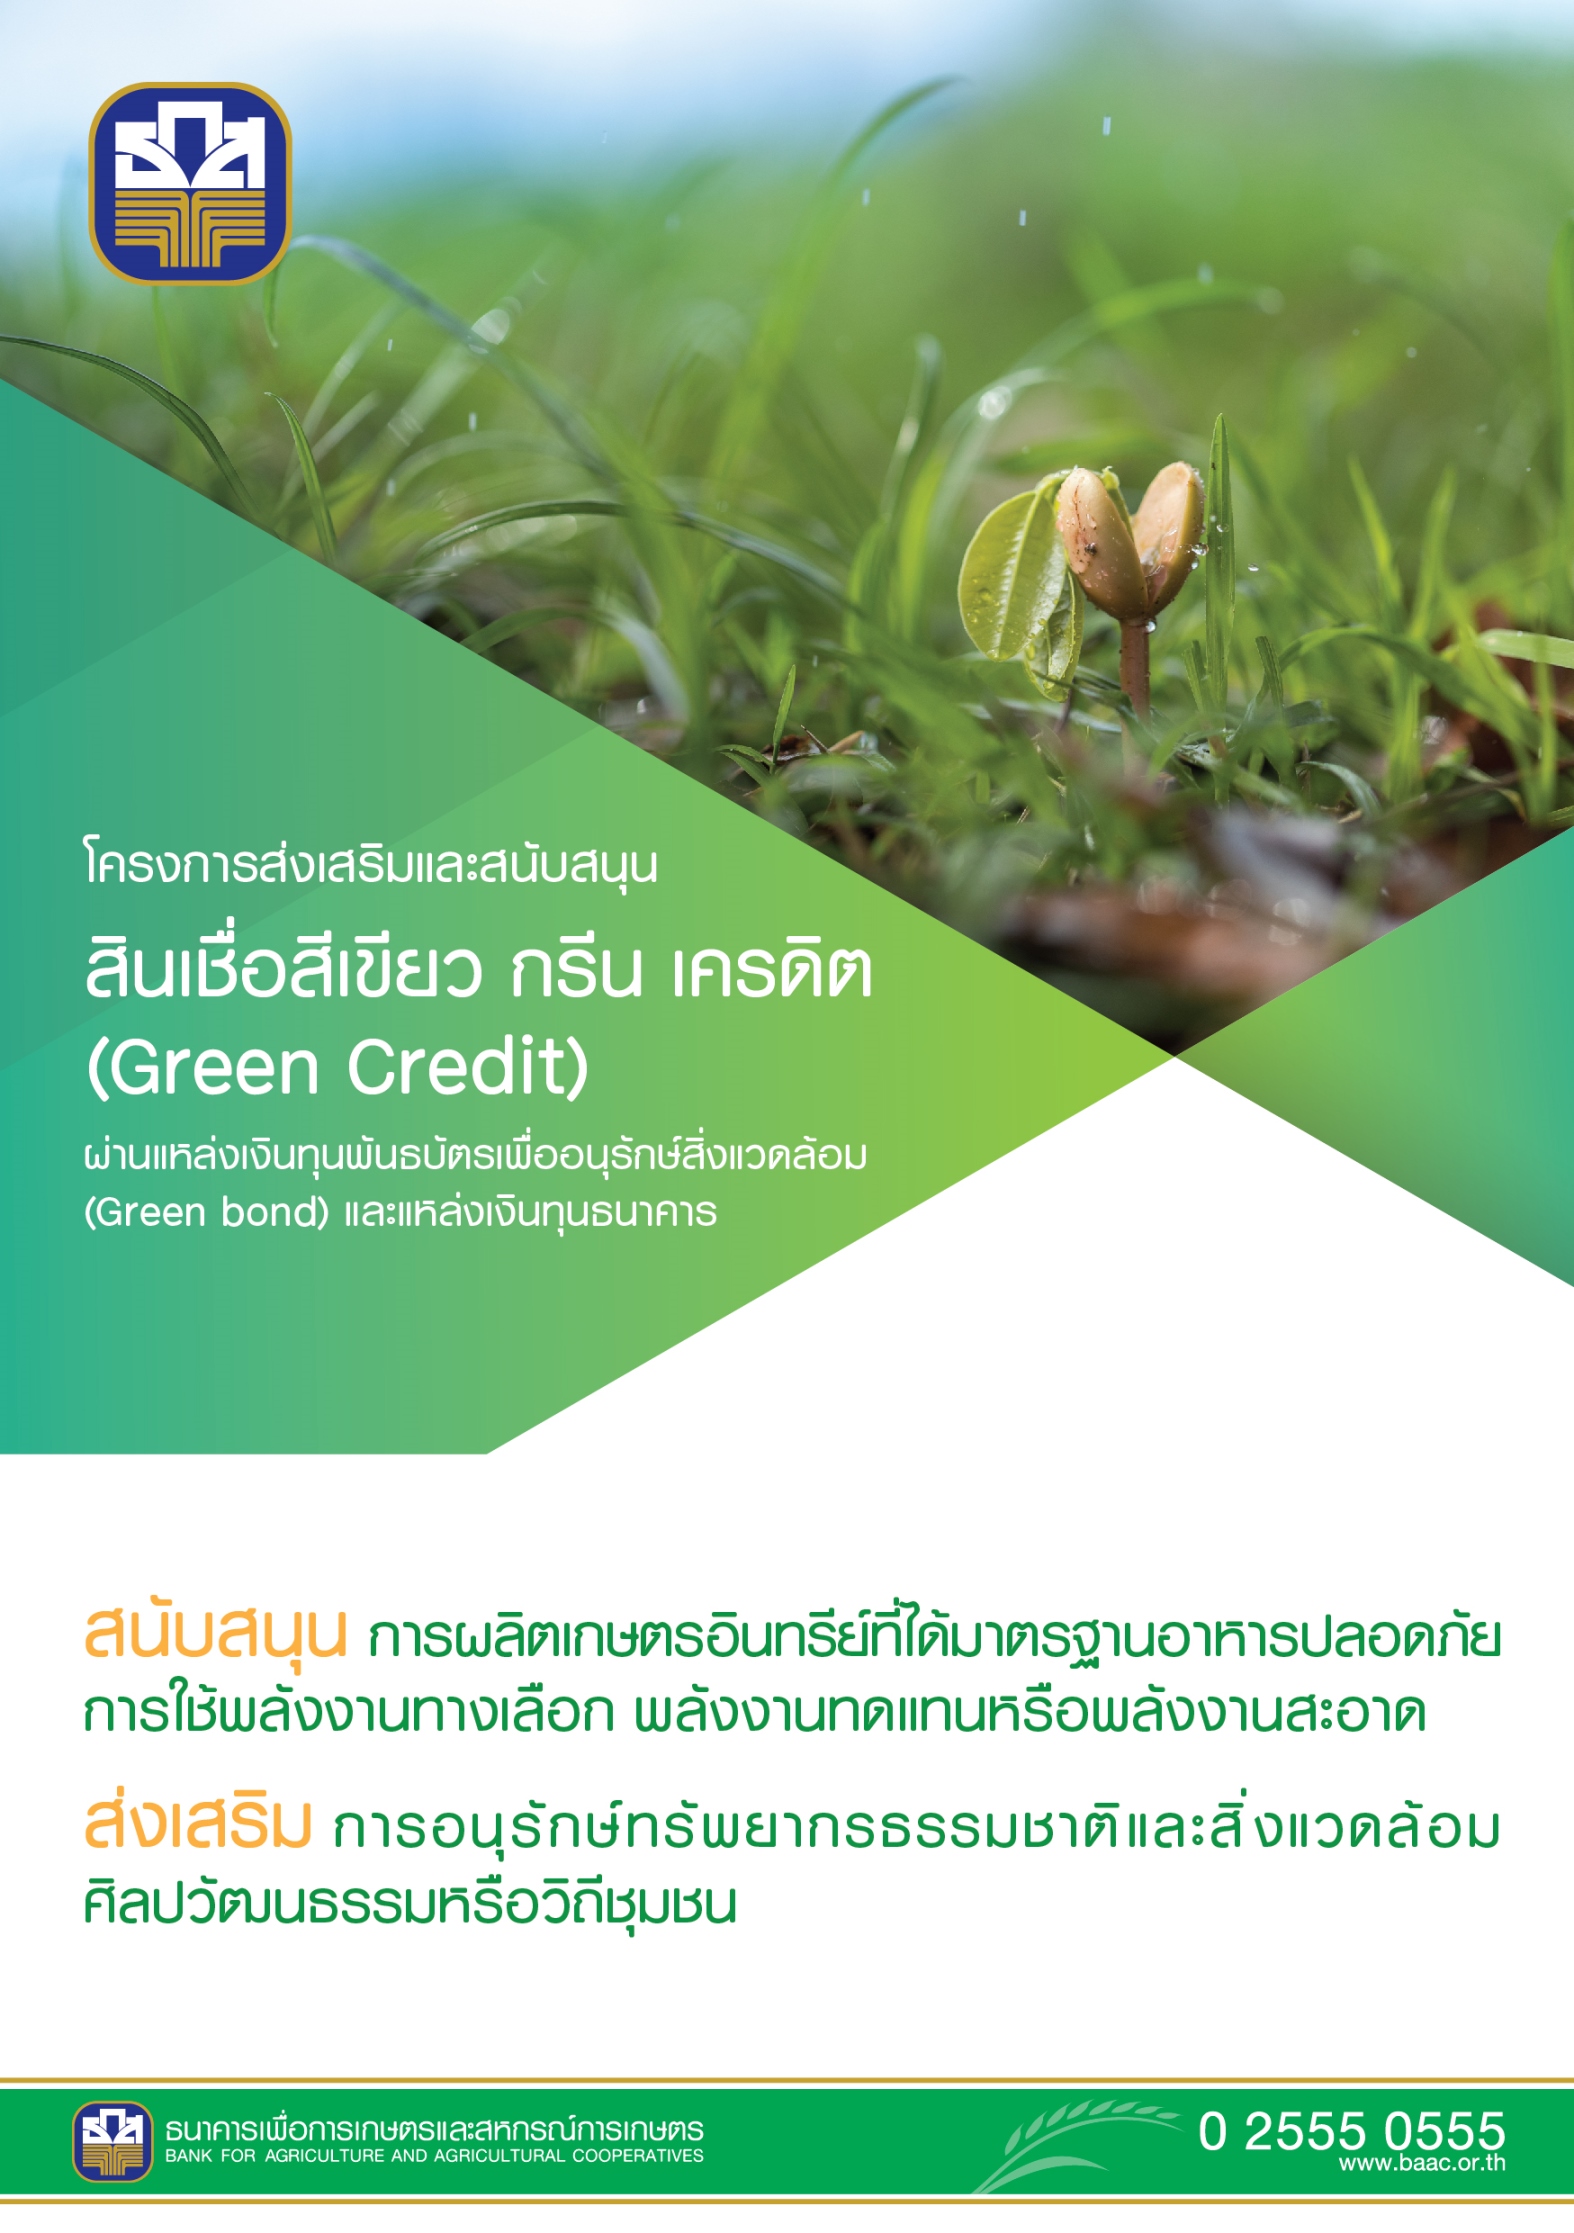 ธ.ก.ส. เคลื่อนทุน Green Bond เร่งเพิ่มพื้นที่สีเขียว การผลิตอาหารปลอดภัยและพลังงานสะอาด